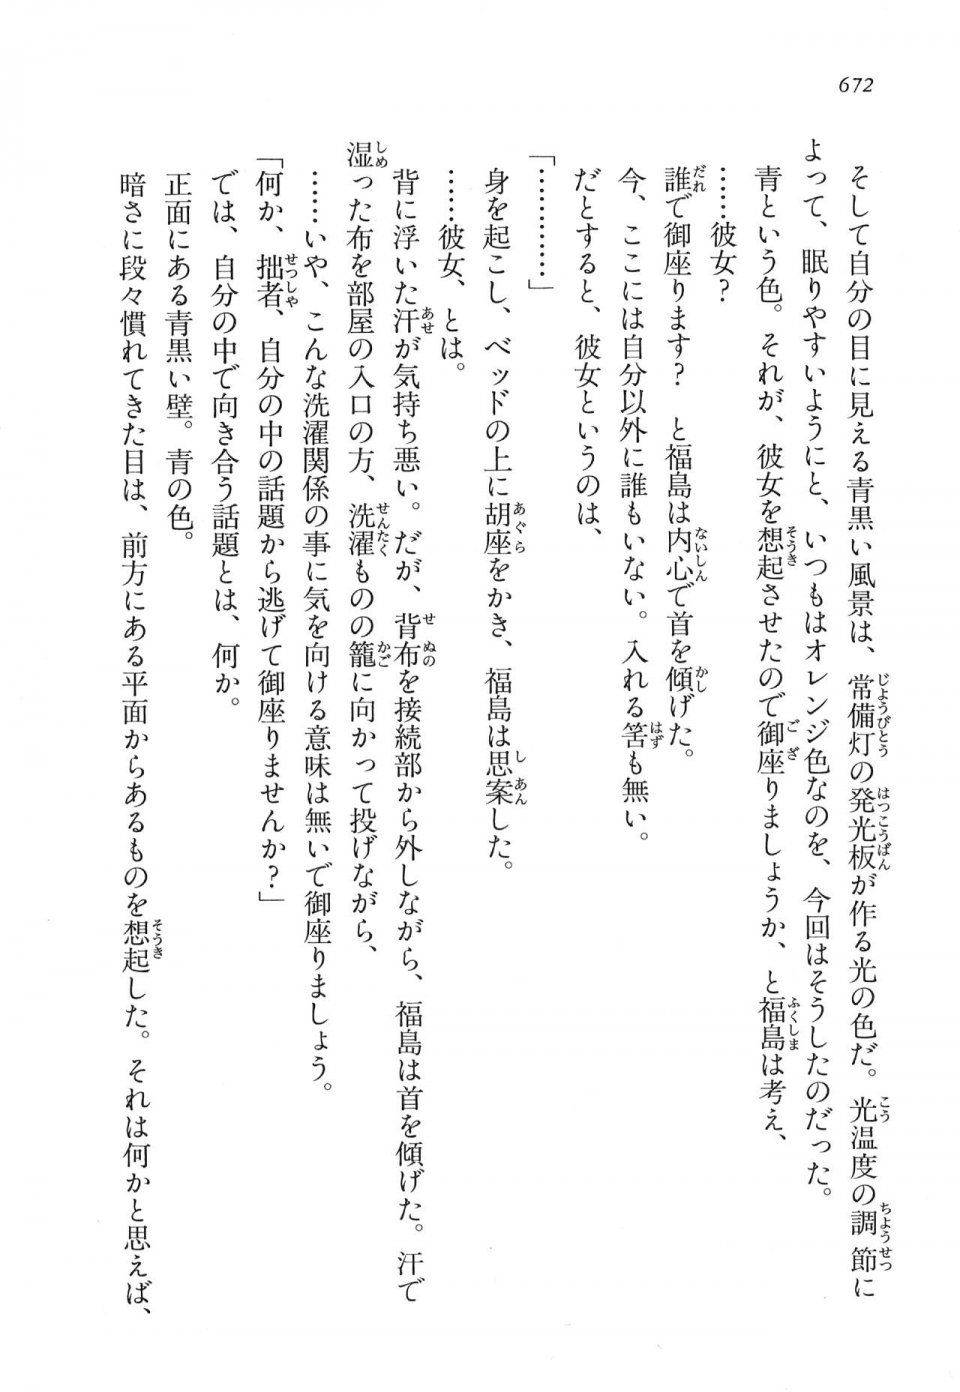 Kyoukai Senjou no Horizon LN Vol 16(7A) - Photo #672